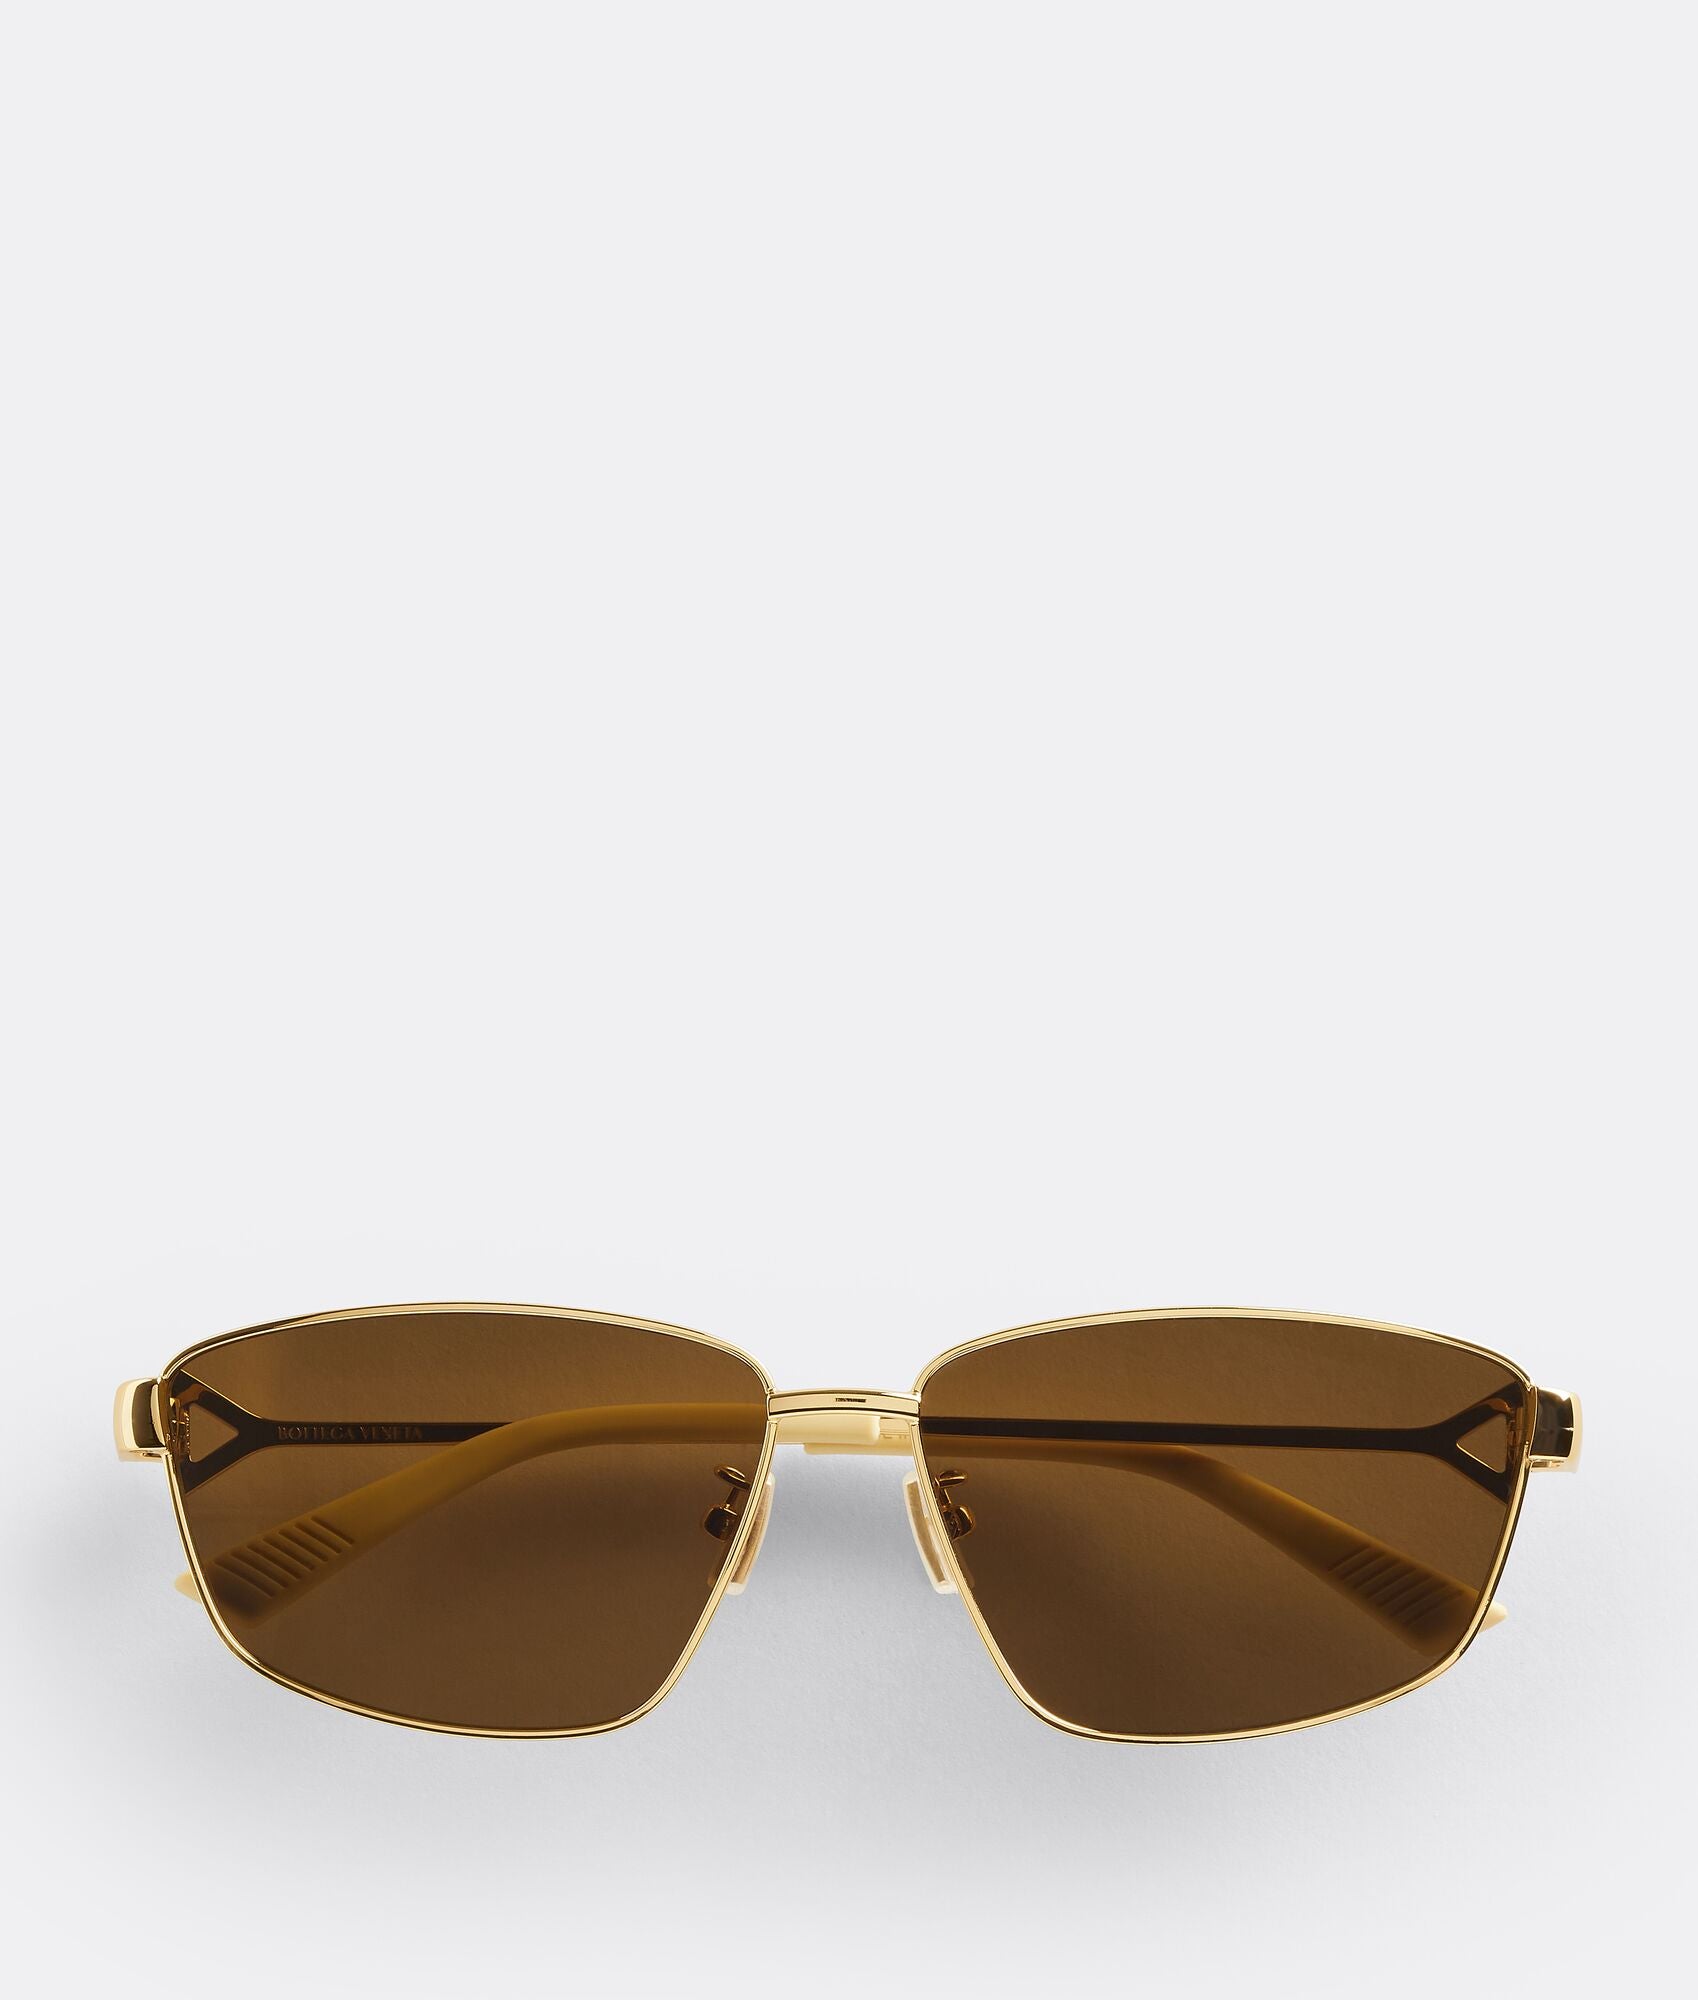 Bottega Veneta Turn Square Sunglasses - Gold/Brown